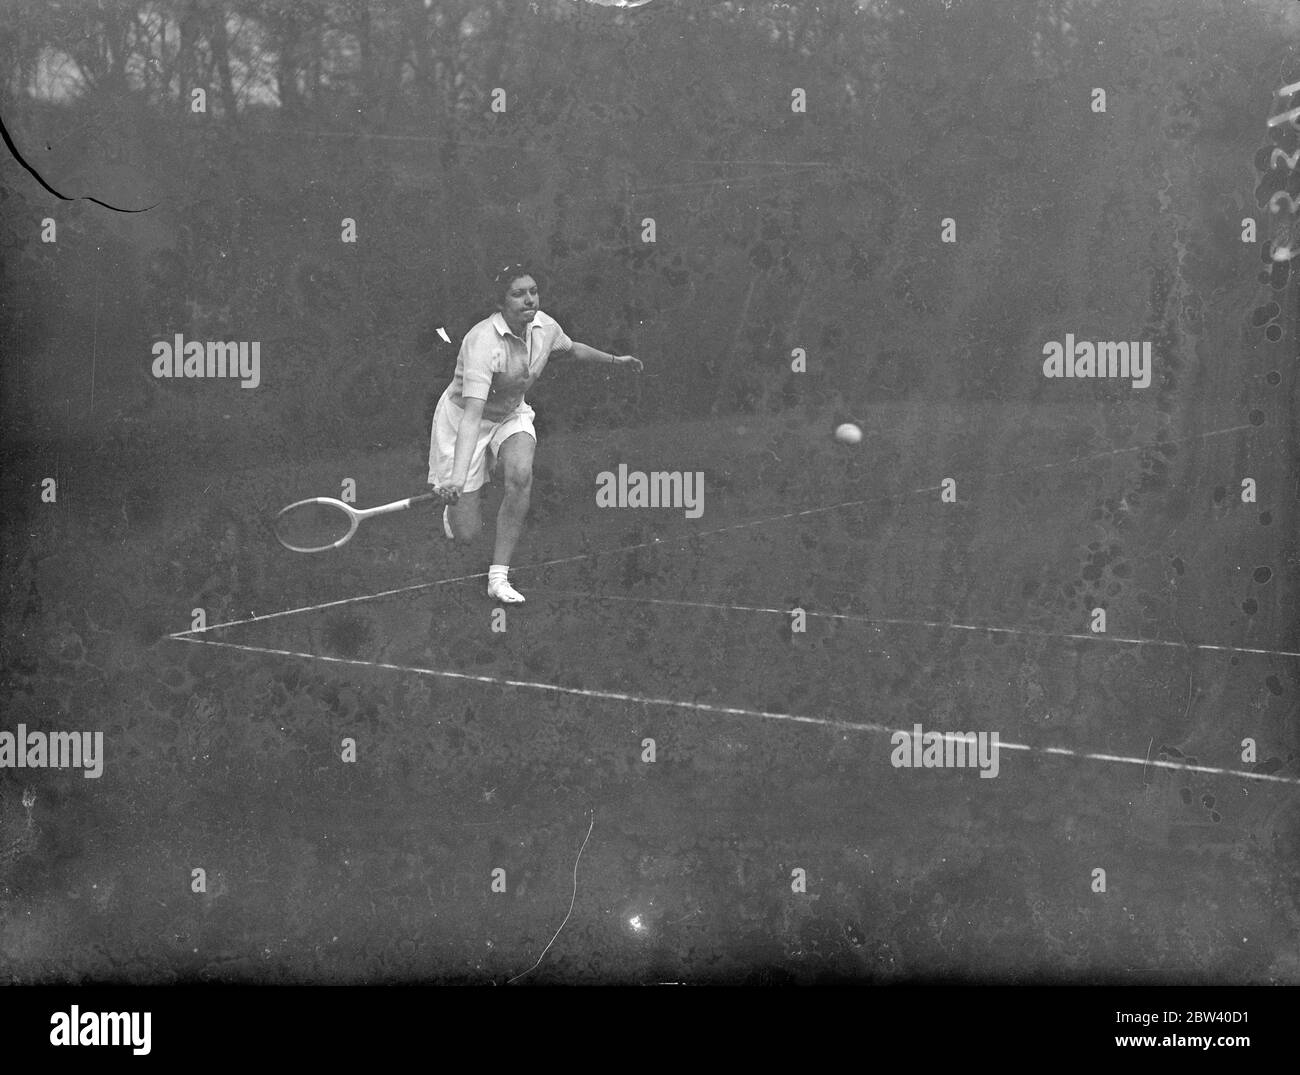 Miss P Lannon nimmt an Melbury Clubs Turnier Teil. Führende Tennisspieler, Männer und Frauen, werden sich für Wimbledon in der Melbury Clubs Turnier in Kensington. Dieses Turnier ist der erste Tryout von echten Rasen Tennis Stärke in dieser Saison. Foto zeigt, Miss P Lannon im Spiel gegen Frau Palfi. 12. April 1937 Stockfoto